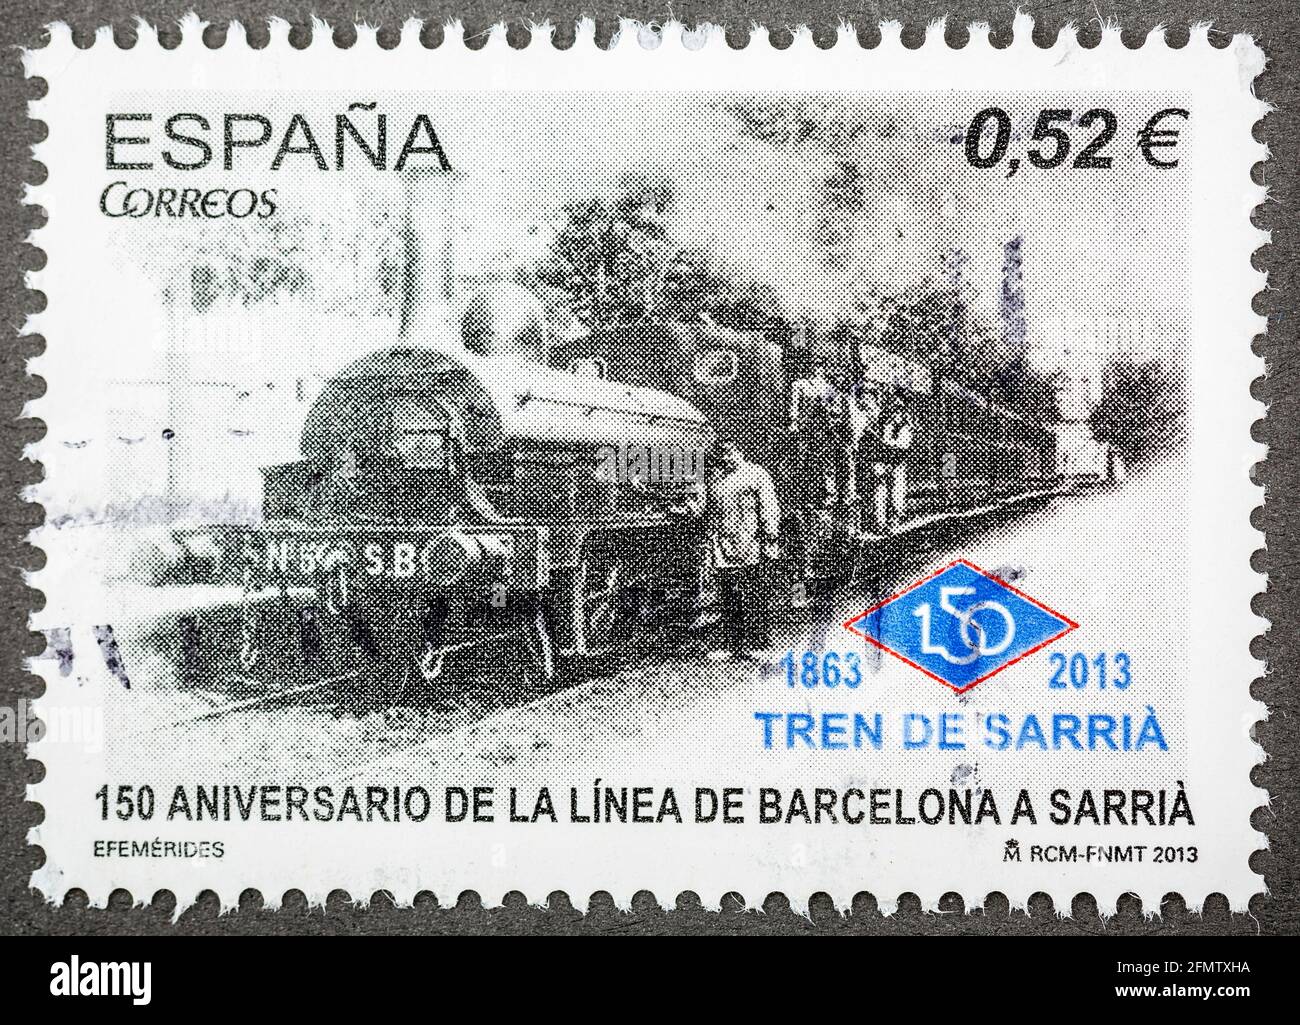 ESPAGNE - VERS 2013: Un timbre imprimé en Espagne montre le 150e anniversaire du premier train Barcelona Sarria, vers 2013. Banque D'Images